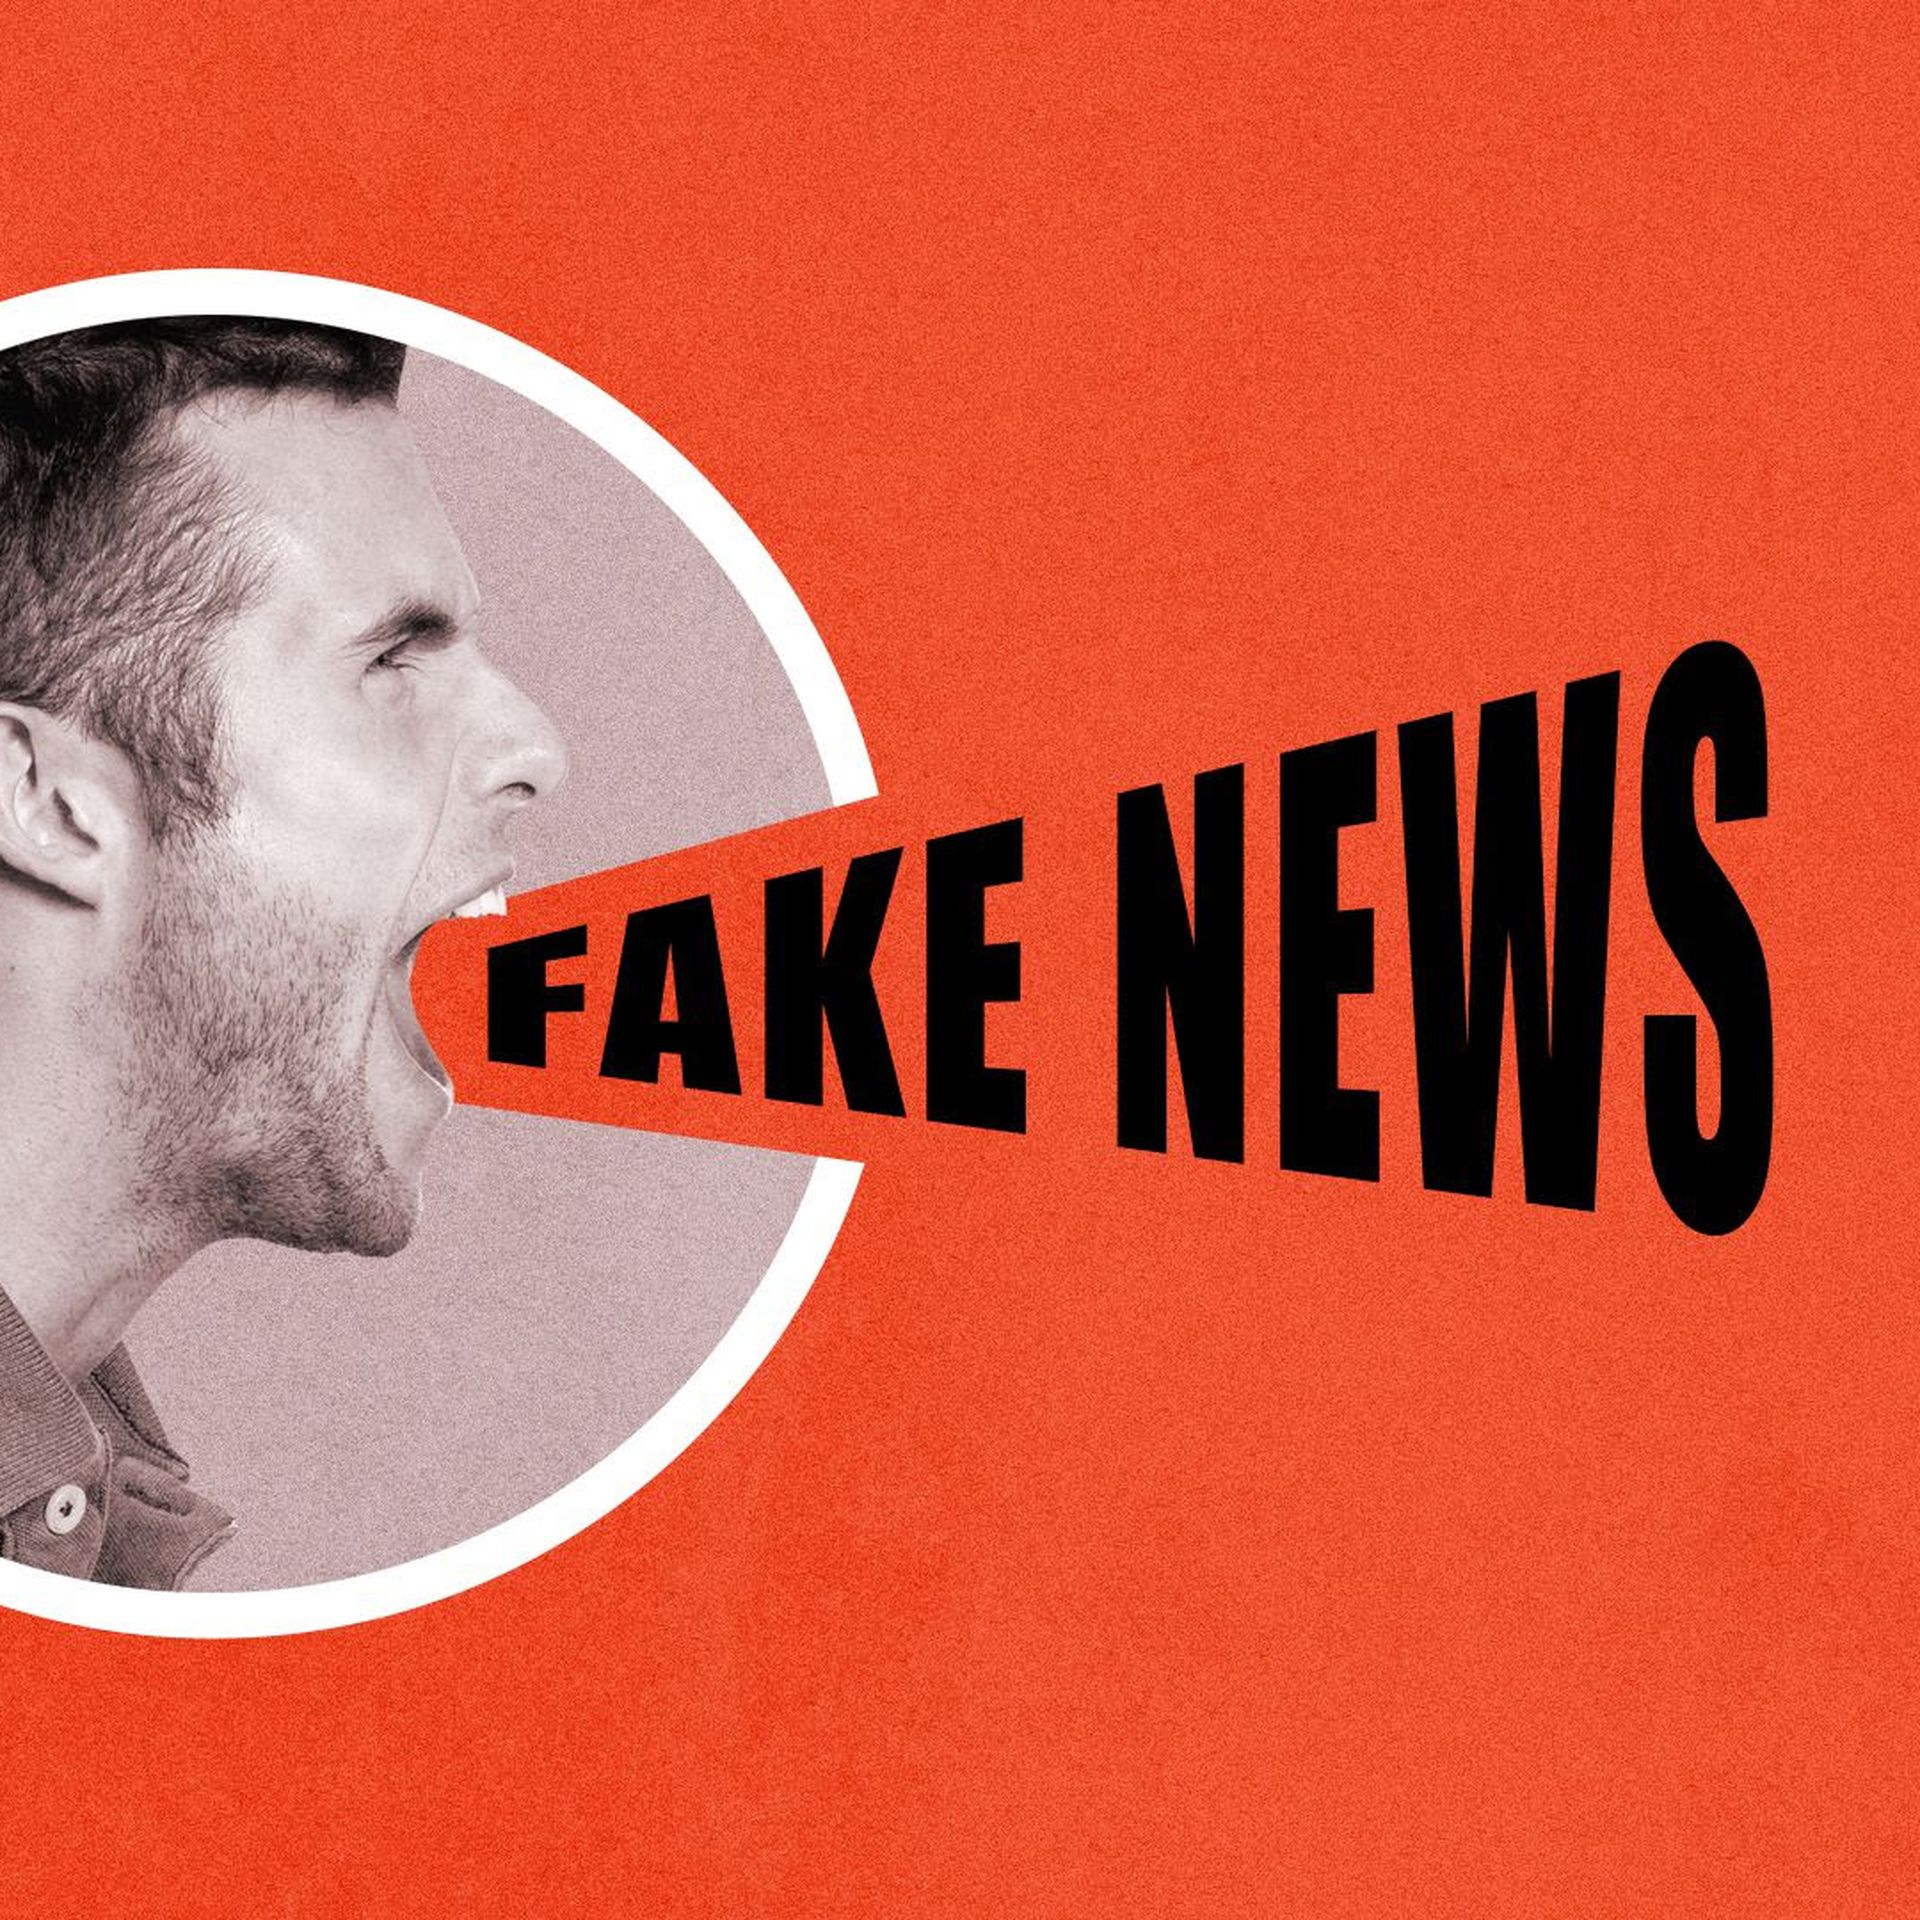 Illustration of man screaming "Fake News"